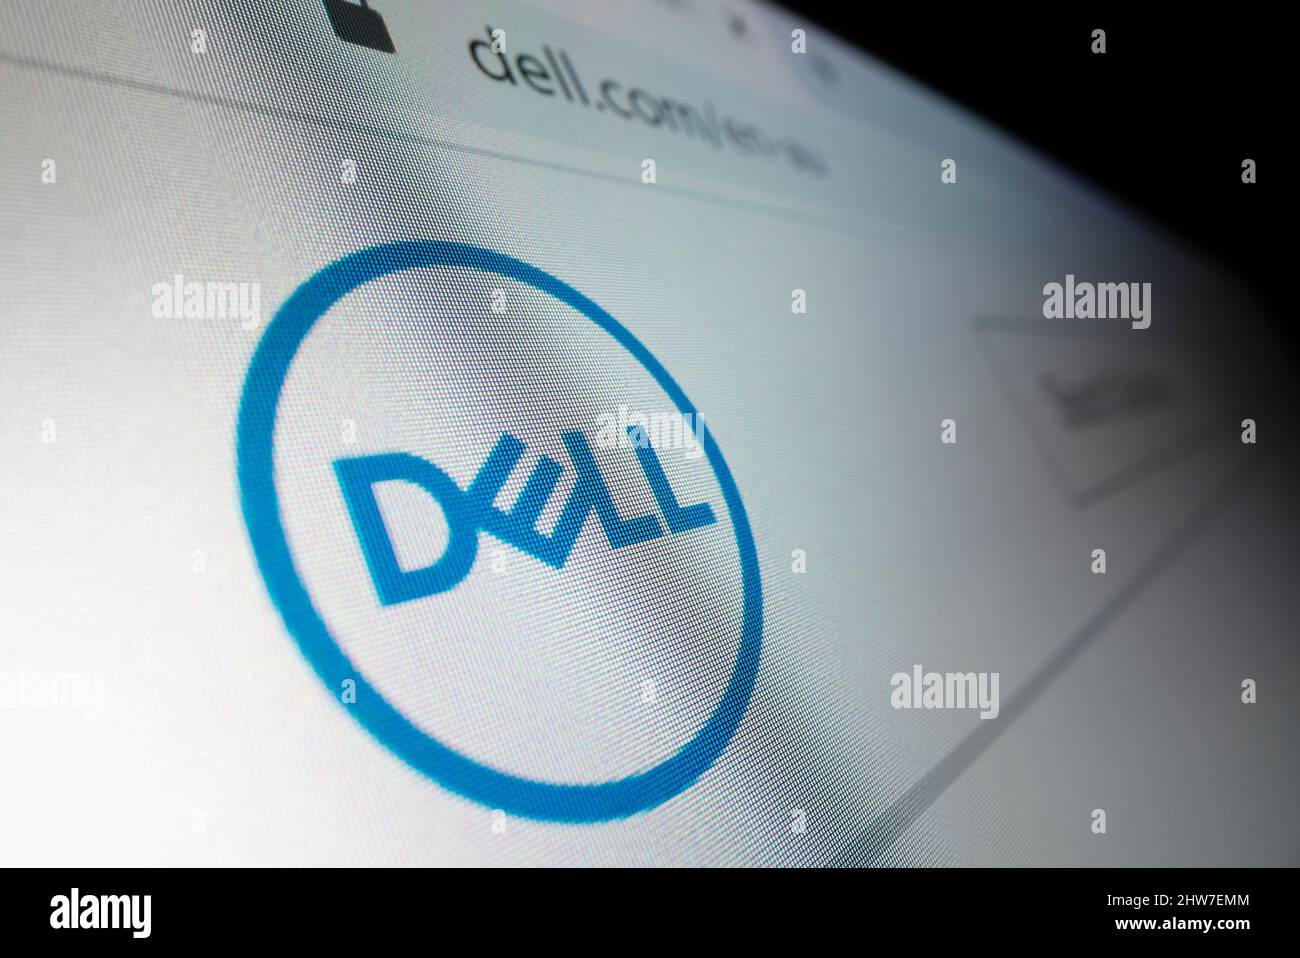 Melbourne, Australie - 8 juin 2021 : gros plan du logo Dell sur son site Web, tourné avec une sonde macro. Banque D'Images